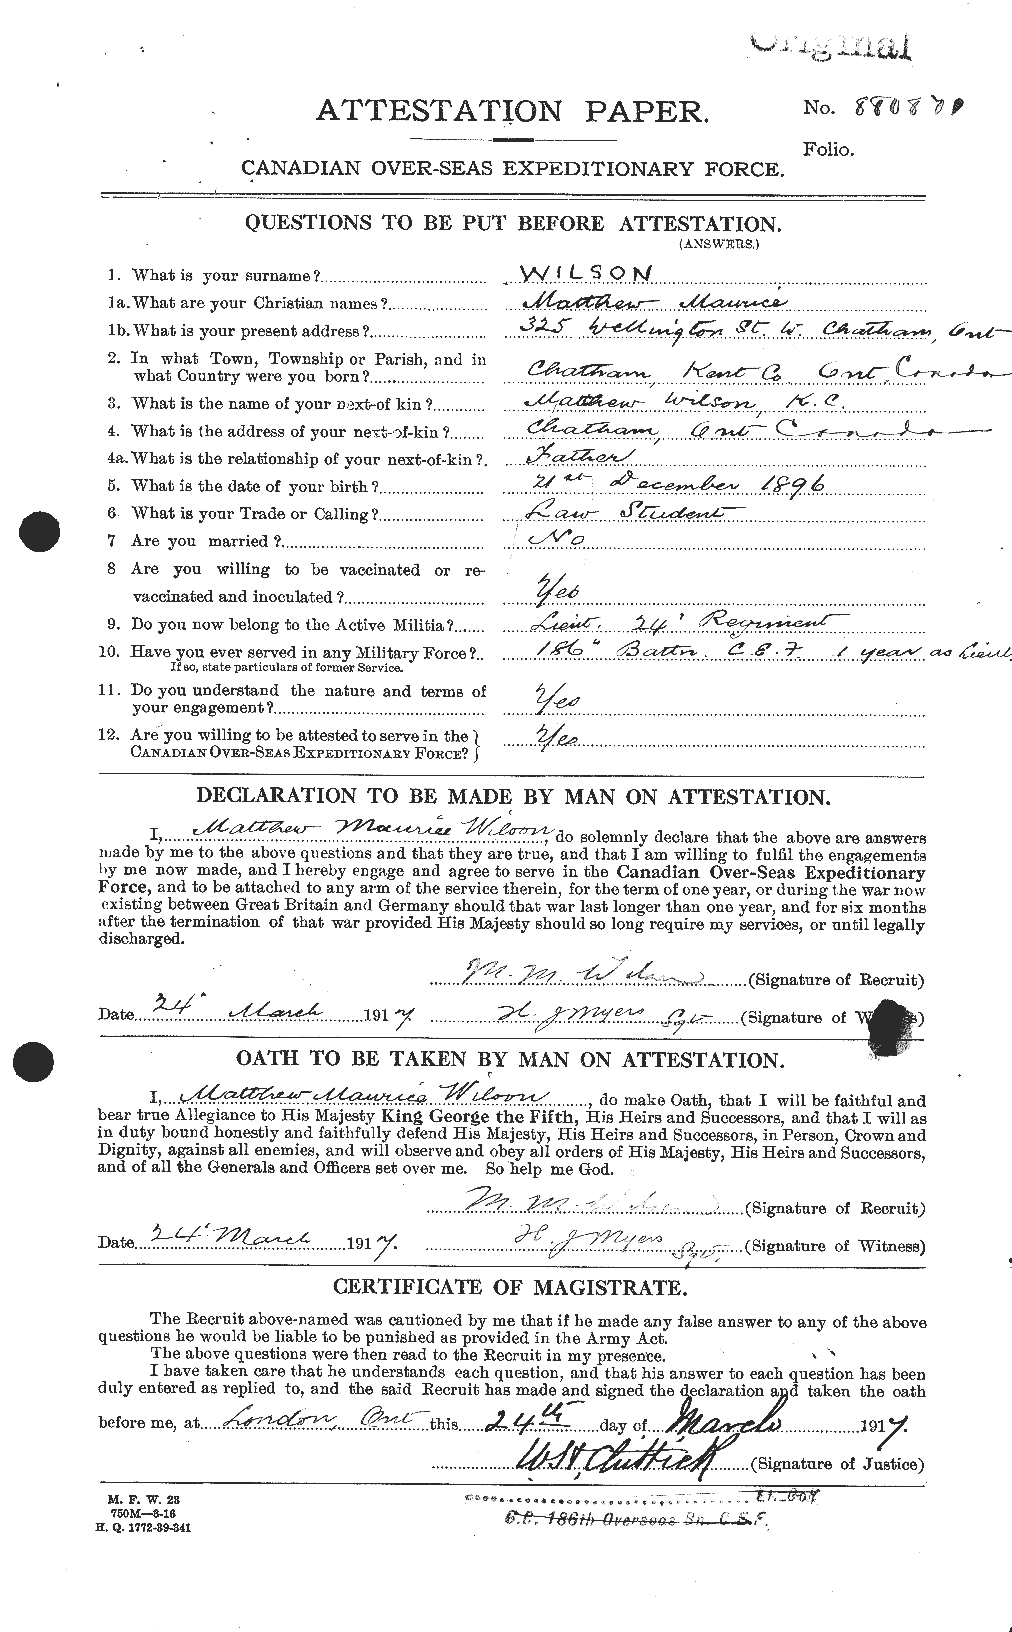 Dossiers du Personnel de la Première Guerre mondiale - CEC 678692a